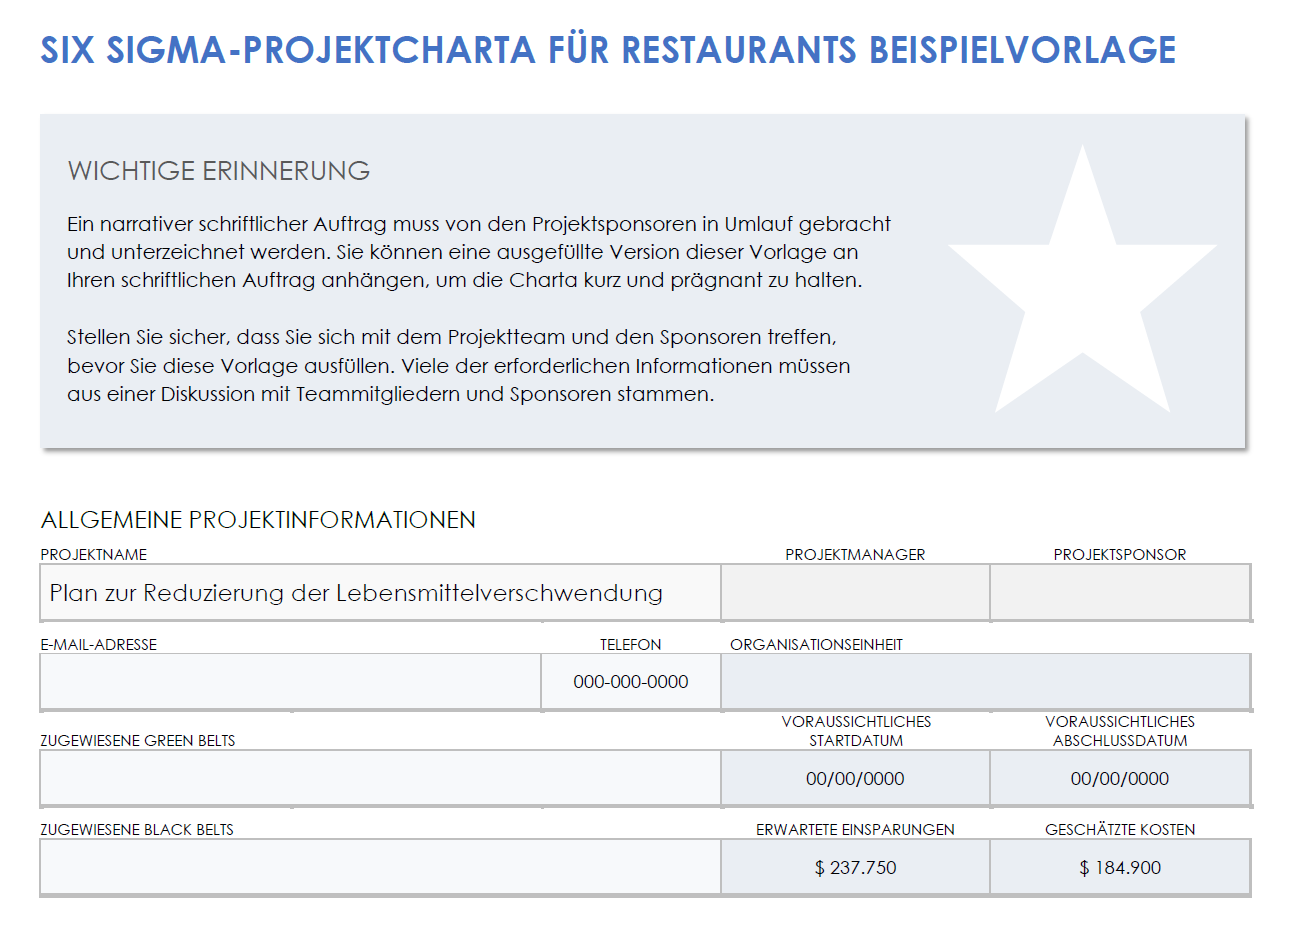  Beispielvorlage für eine Restaurant-Six-Sigma-Projektcharta